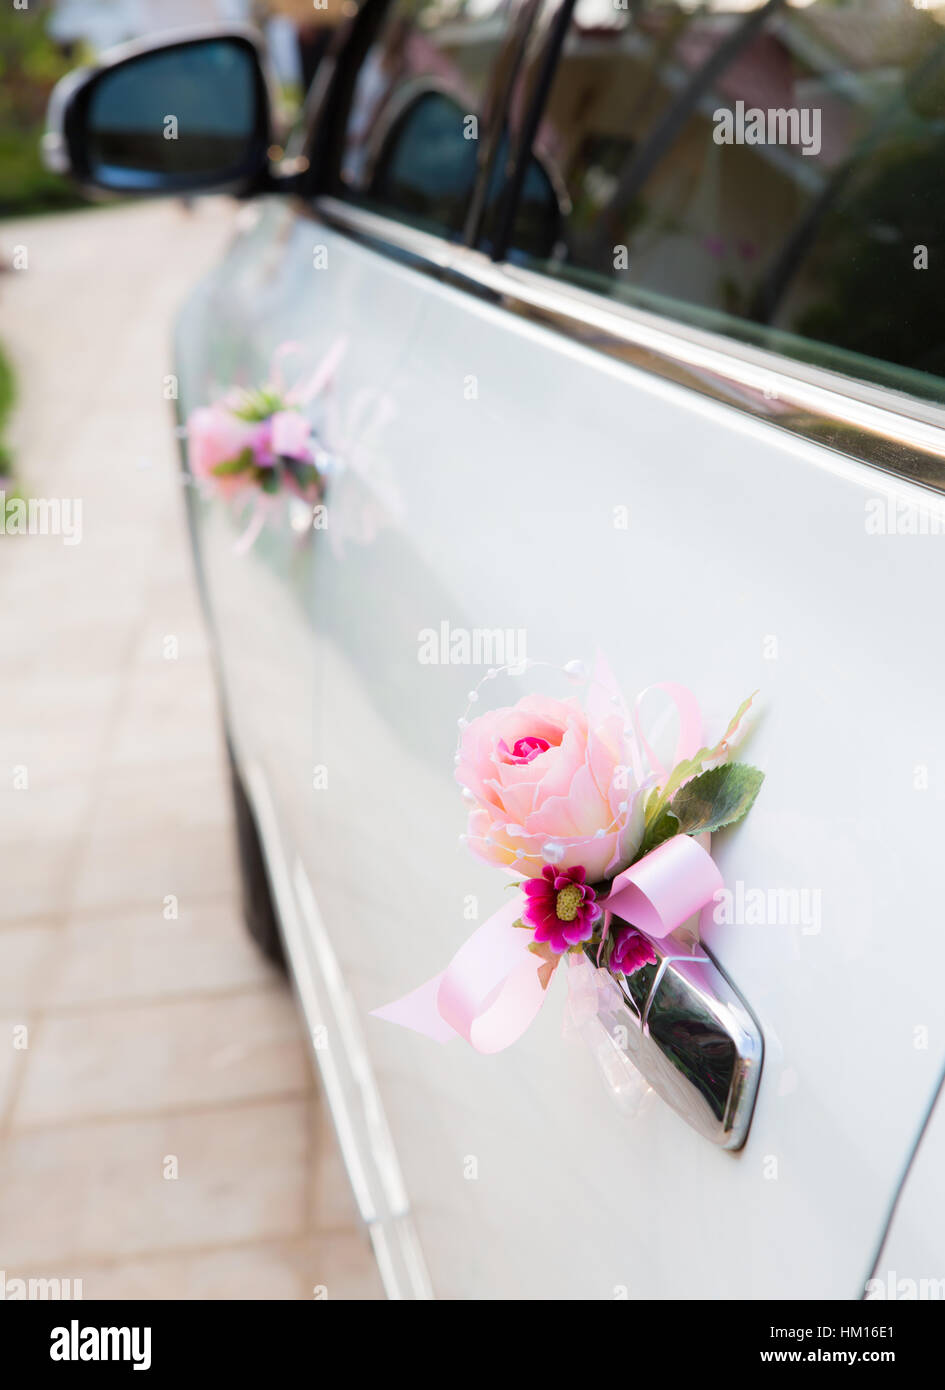 https://c8.alamy.com/compfr/hm16e1/avec-de-belles-decorations-de-voiture-de-mariage-hm16e1.jpg